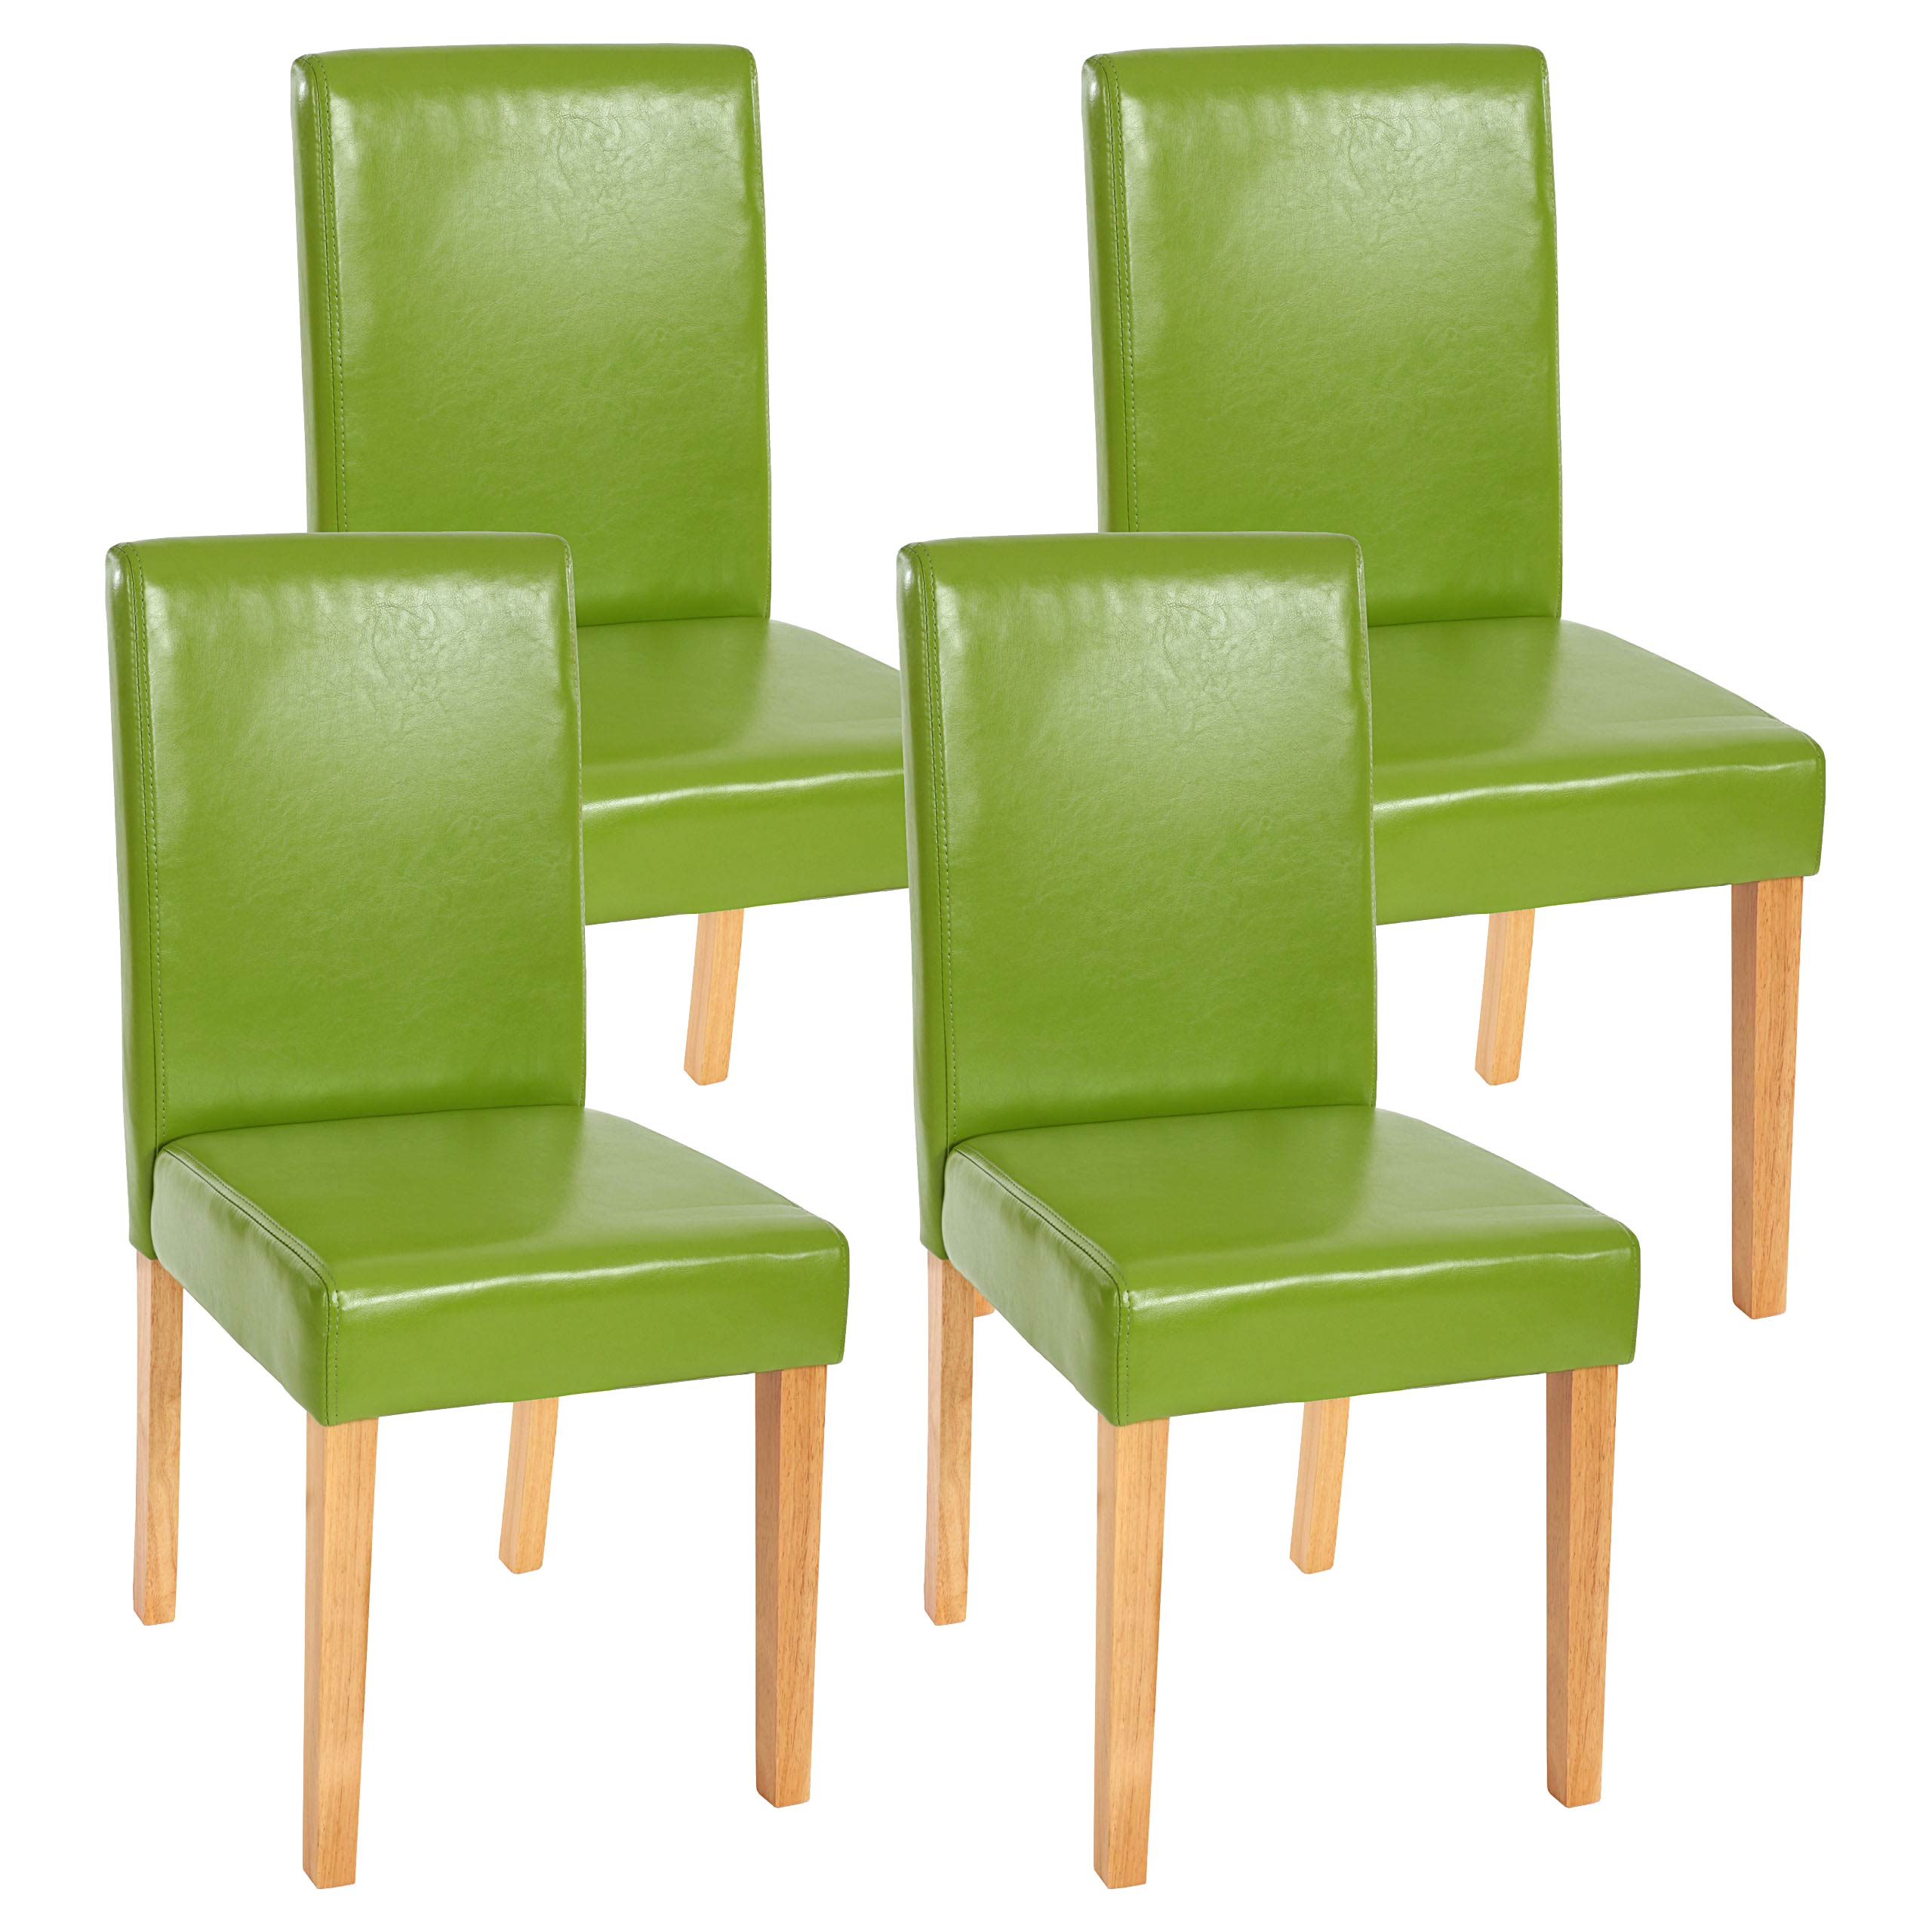 4x Esszimmerstuhl Stuhl Küchenstuhl Littau Kunstleder, grün, helle Beine |  Swisshandel24